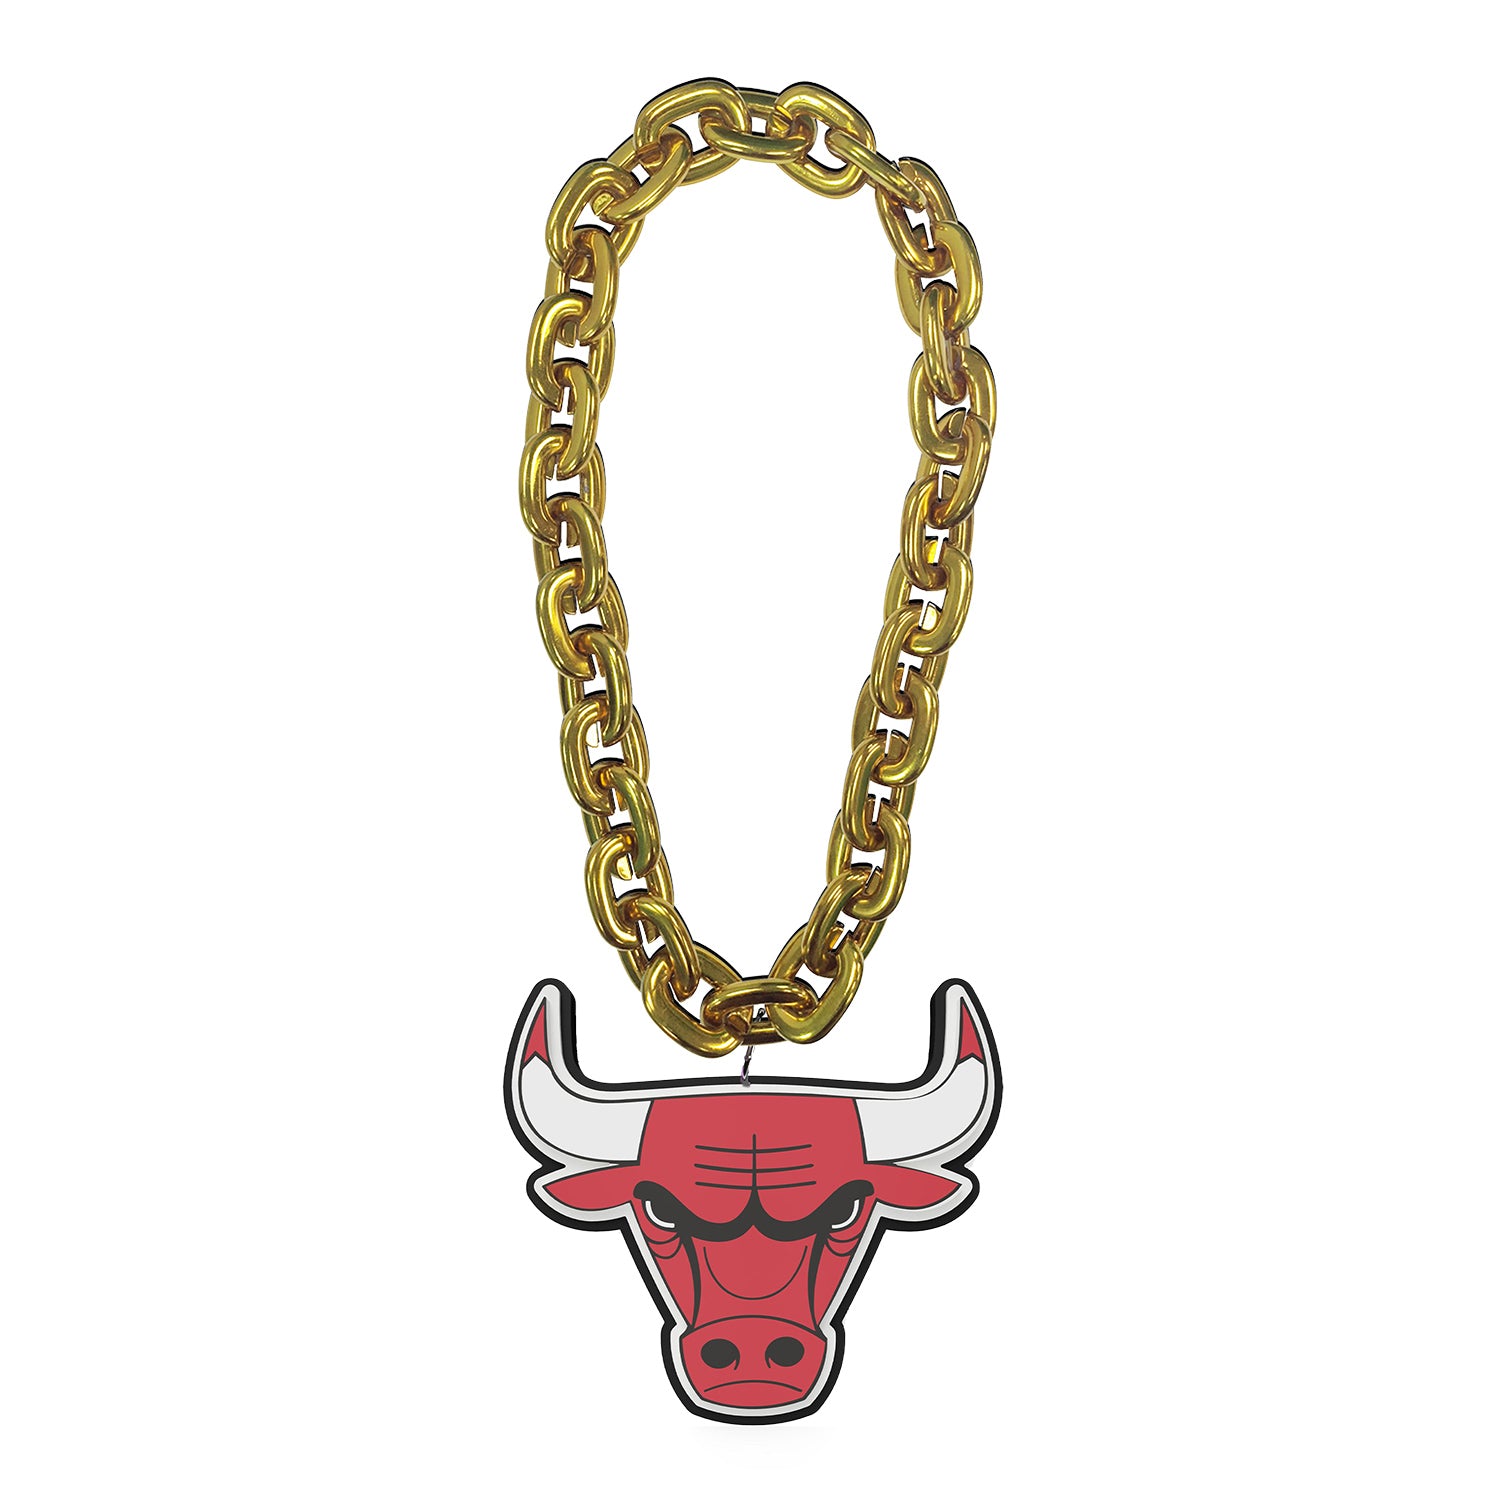 aminco NBA womens NBA Logo Pendant Necklace